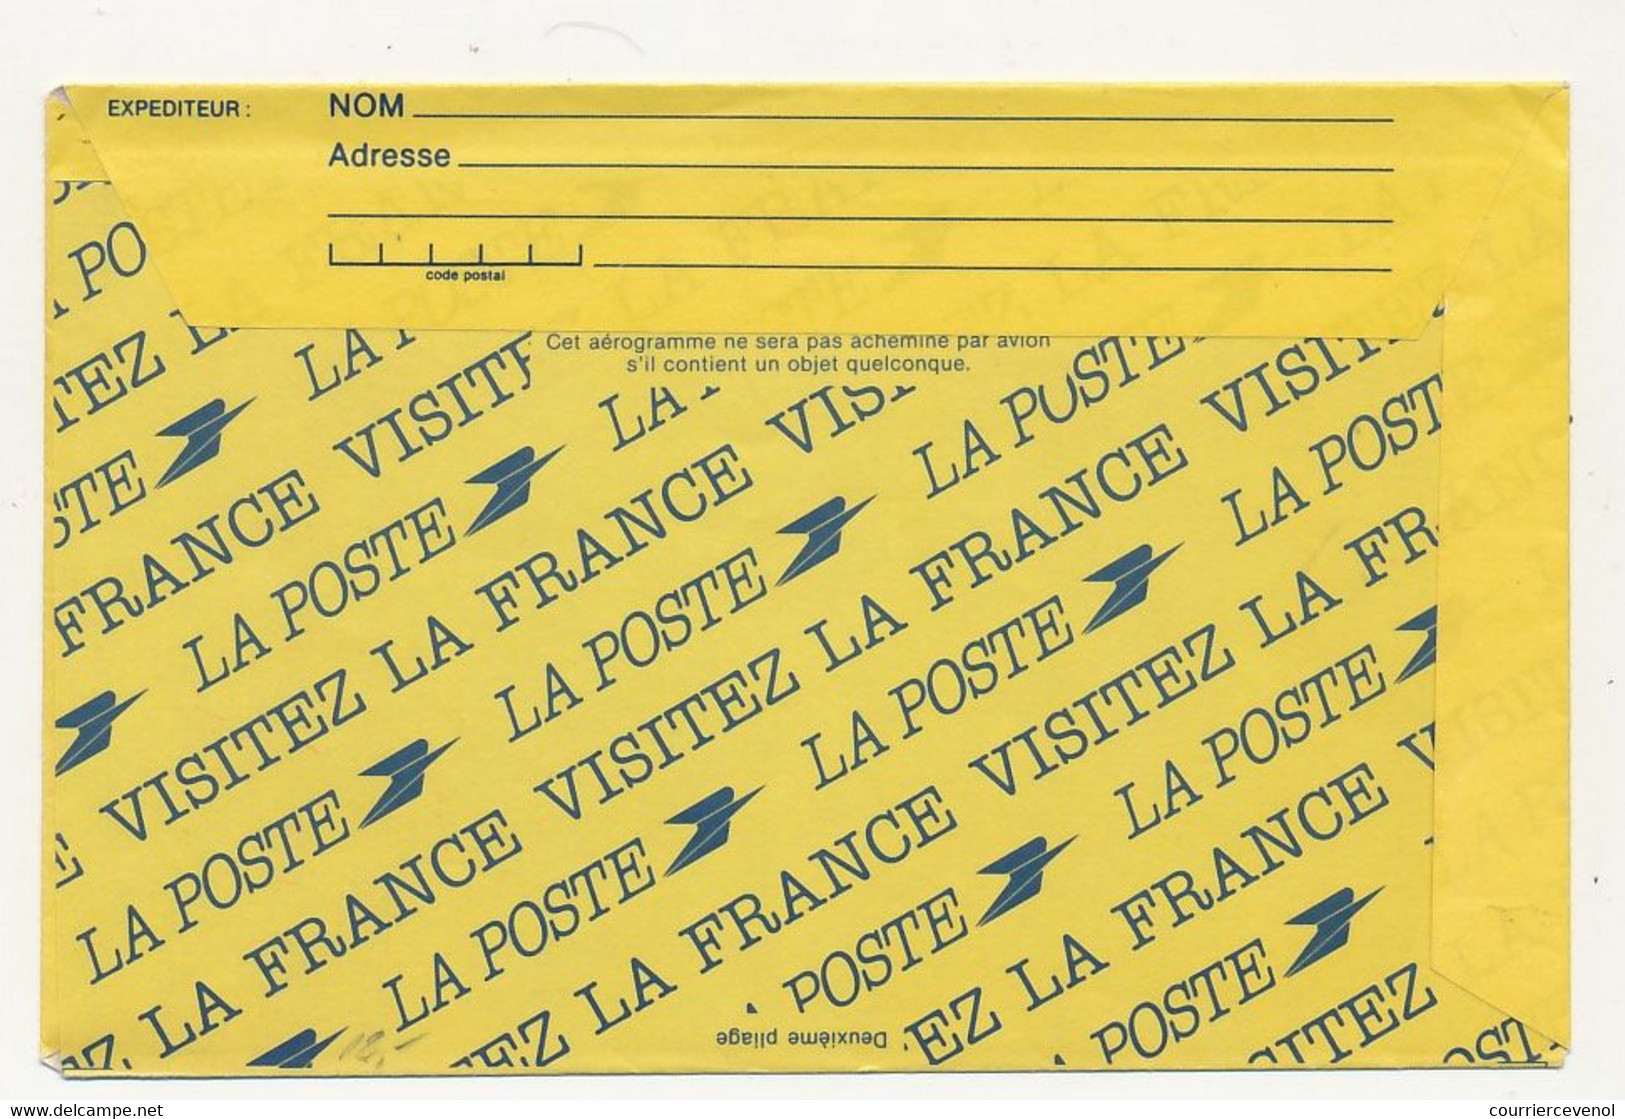 FRANCE => Aérogramme 3,50 Repiquage "36e Salon De L'Aéronautique... Le Bourget" 31/5/1985 - Aerograms